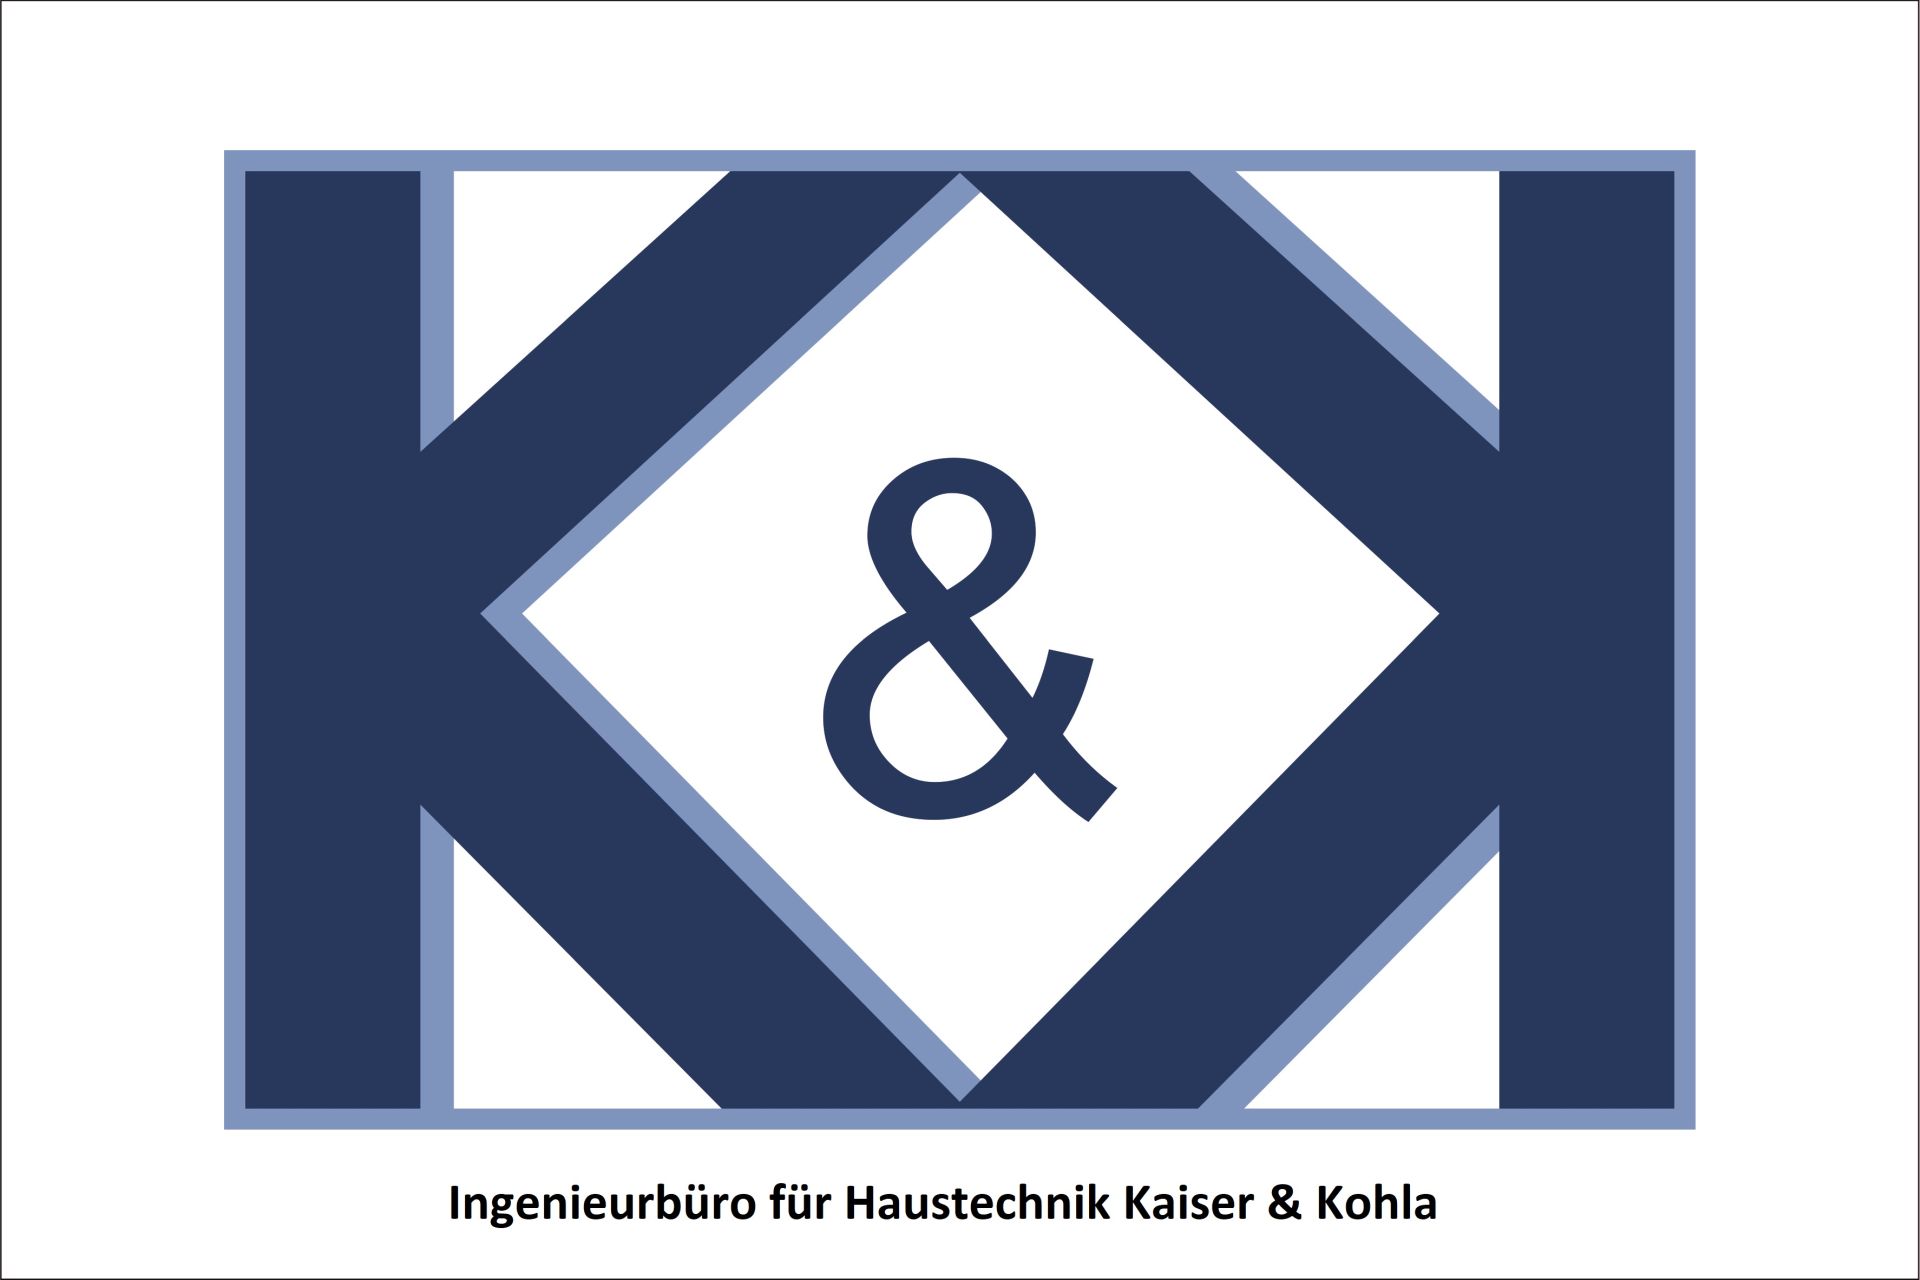 Haustechnik Kaiser & Kohla